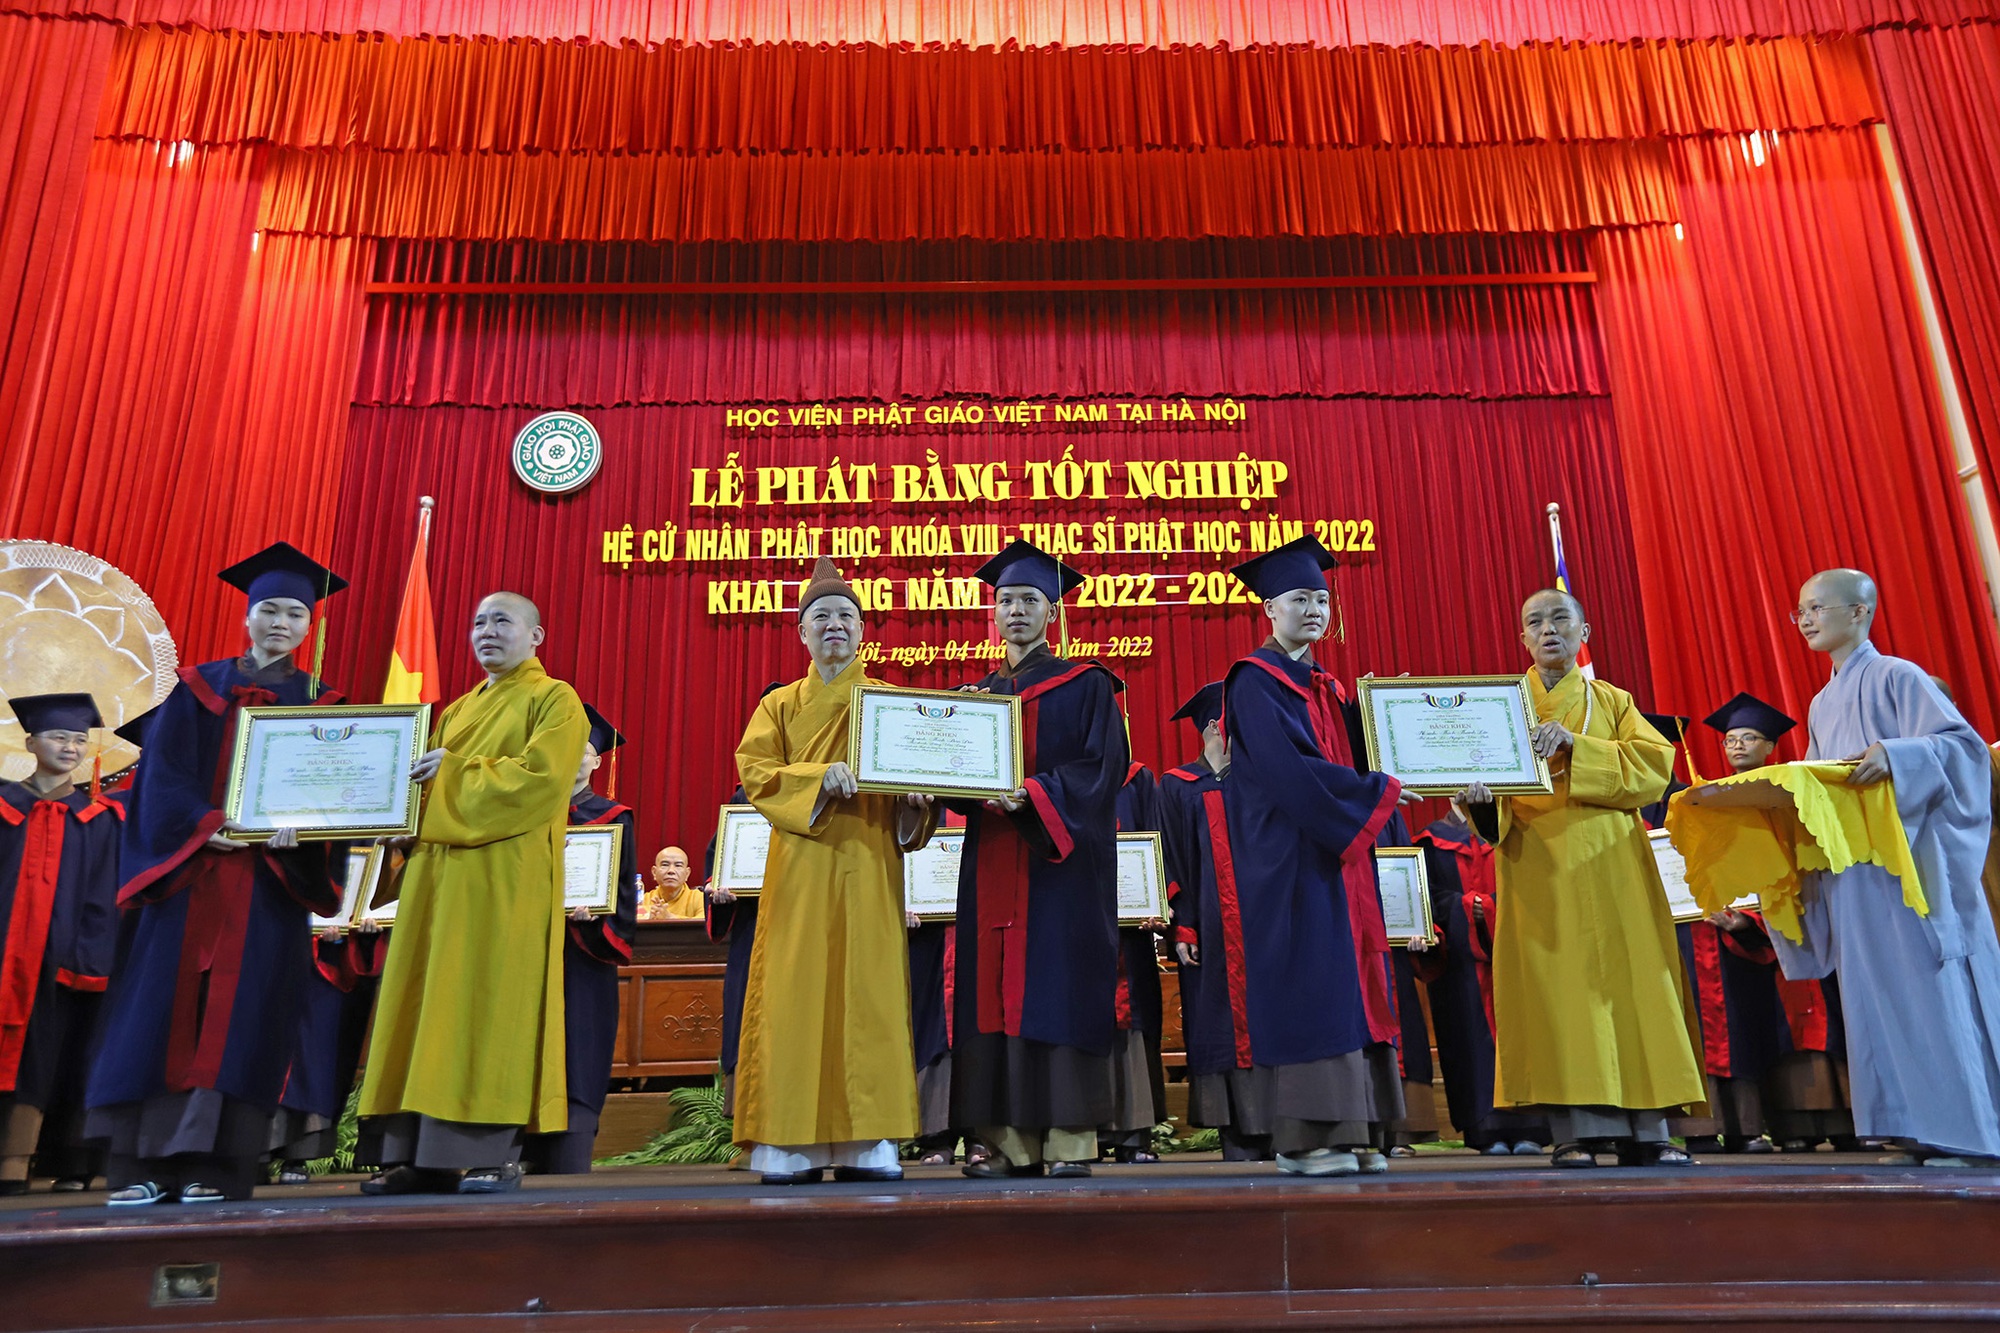 Lễ khai giảng đặc biệt tại ngôi trường có nhiều nhà sư theo học nhất Việt Nam - Ảnh 9.